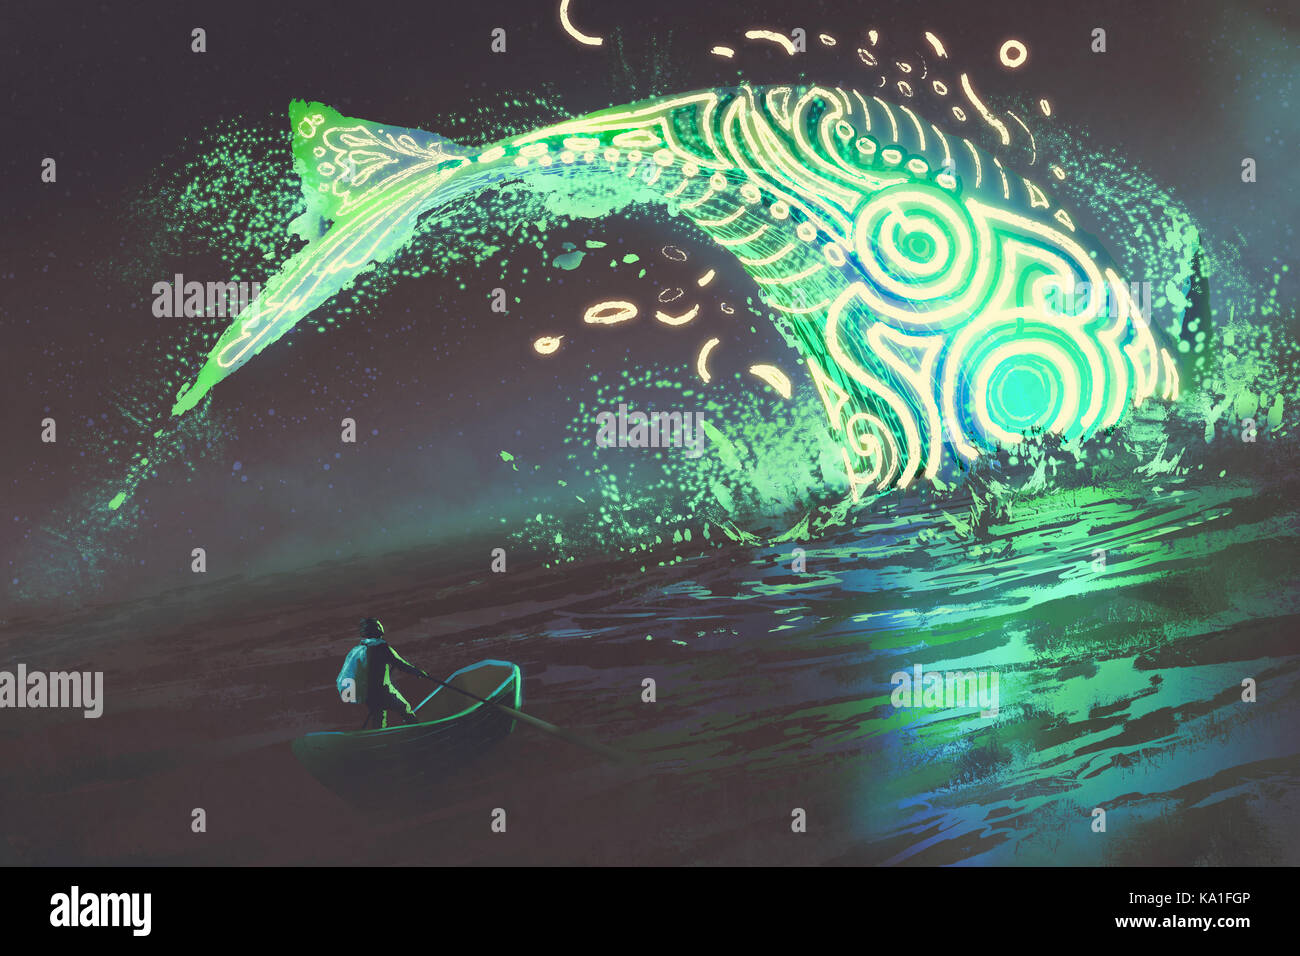 Fantasy Landschaft des Menschen auf der Boot am springenden leuchtenden grünen Wale im Meer suchen, digital art Stil, Illustration Malerei Stockfoto